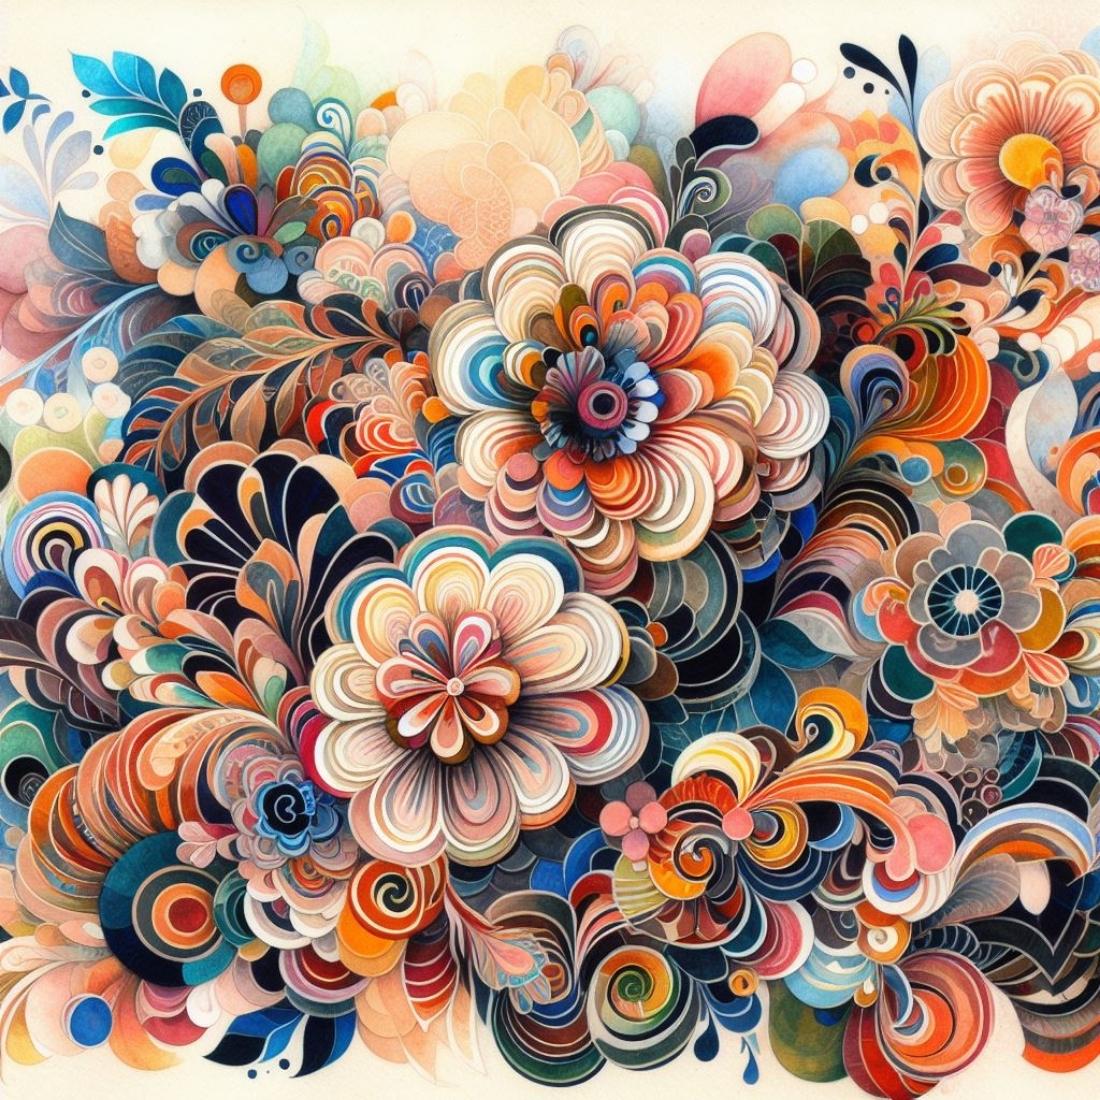 Flower Patterns Design cover image.